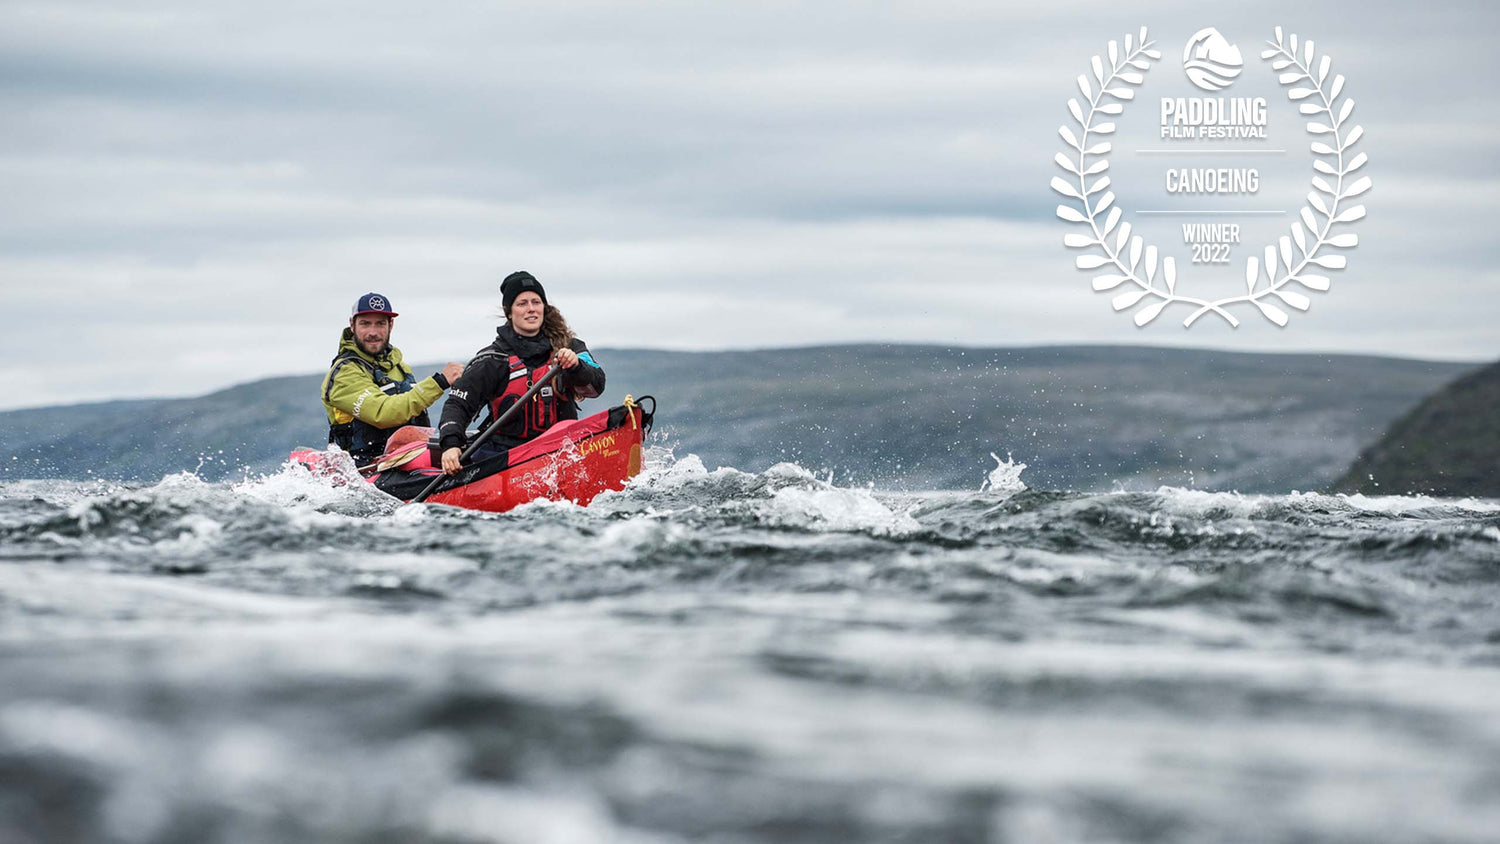 Following Lines winner of best canoe film 2022